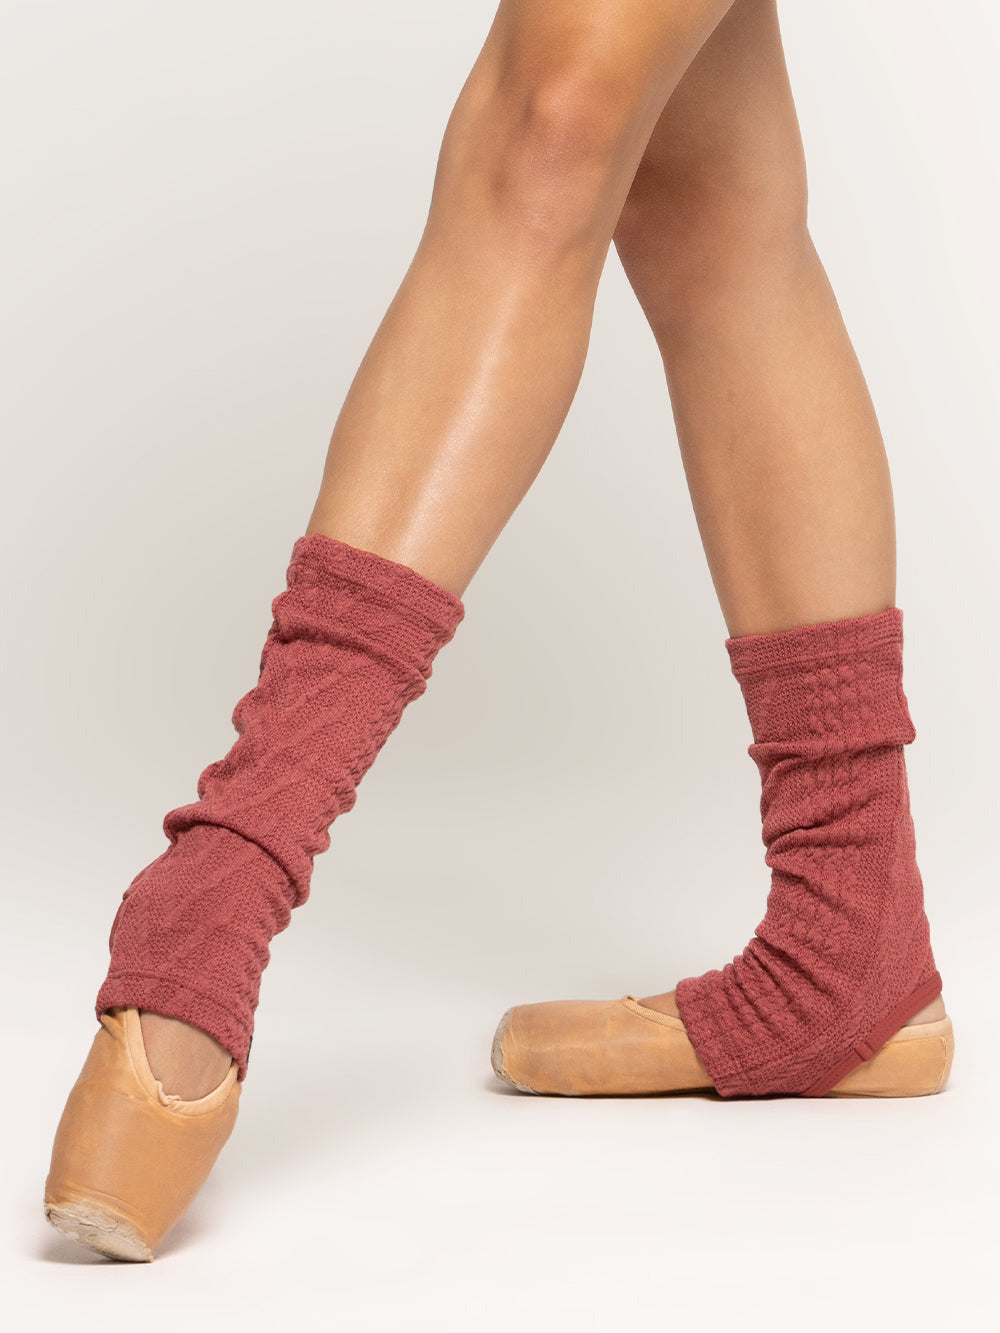 Woolen leg warmers - Magical Leg Warmers - Nature